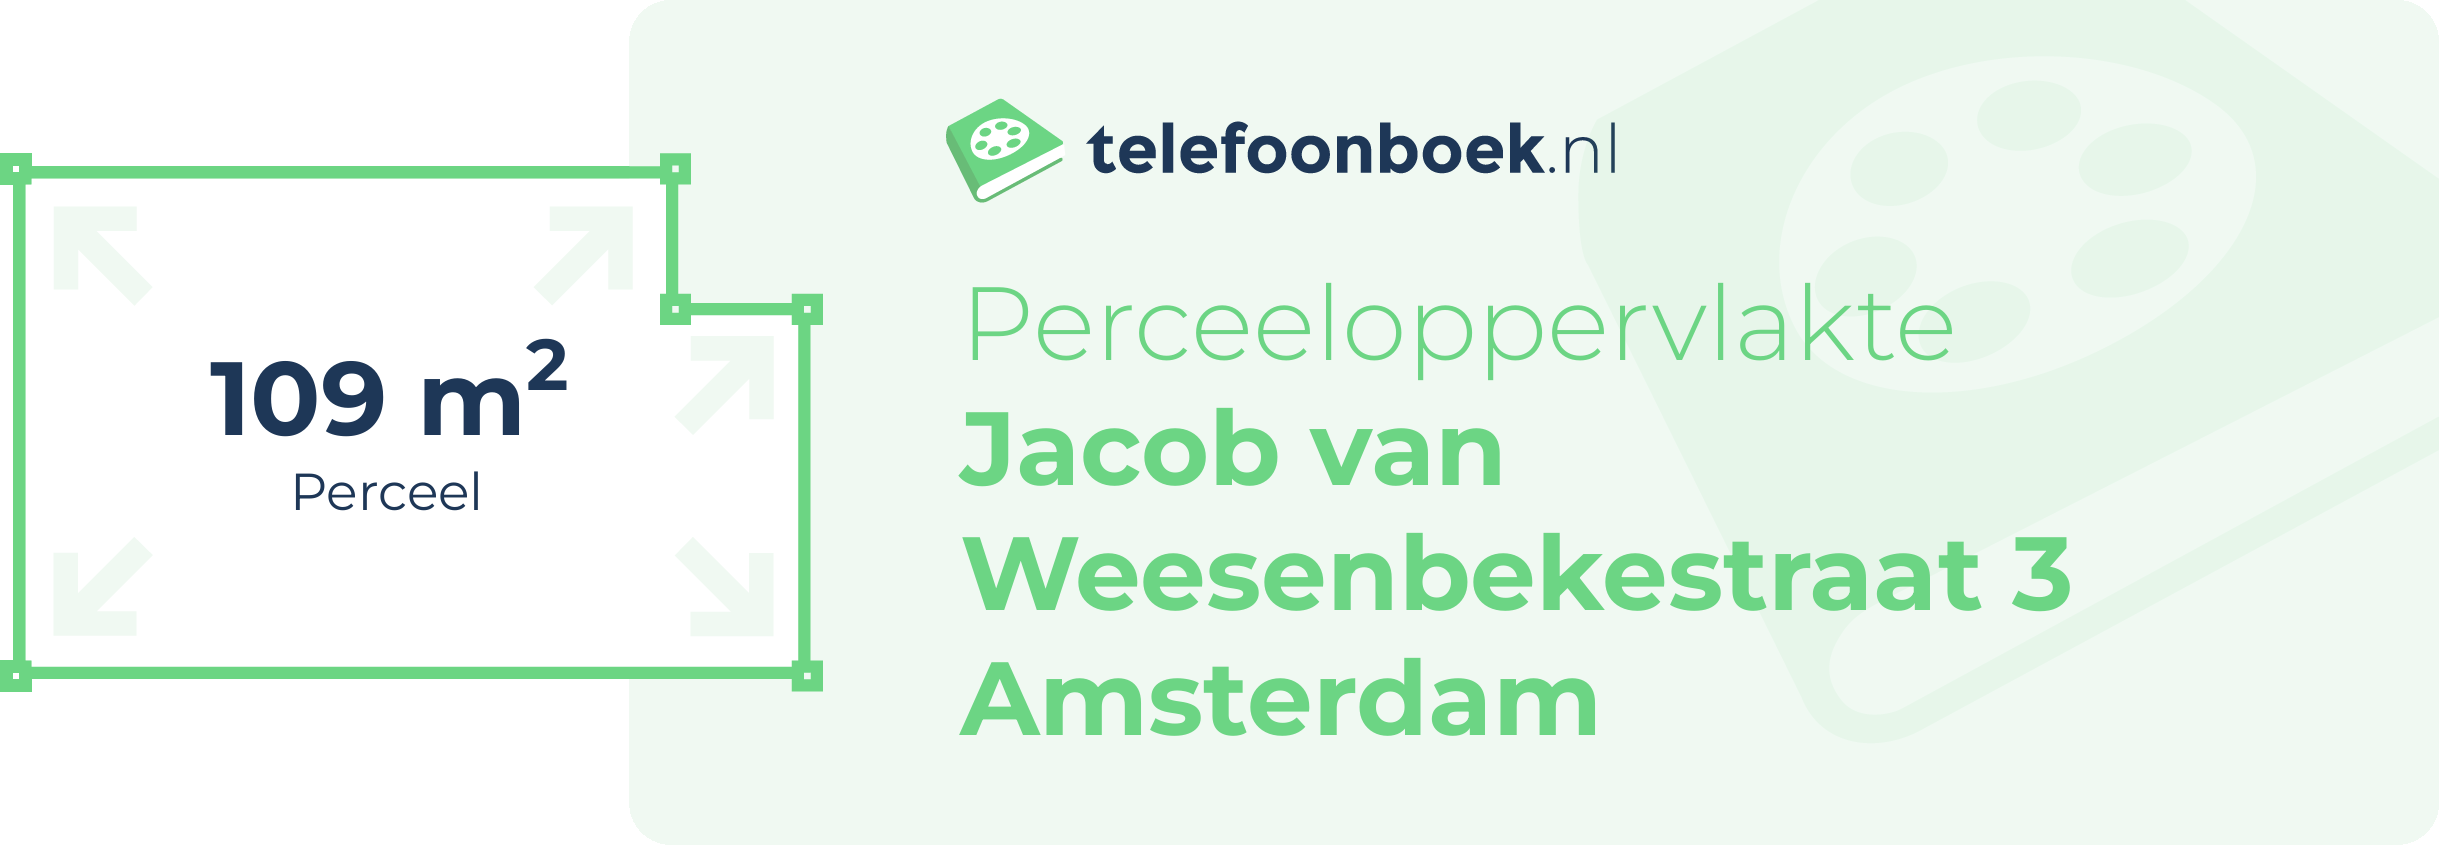 Perceeloppervlakte Jacob Van Weesenbekestraat 3 Amsterdam